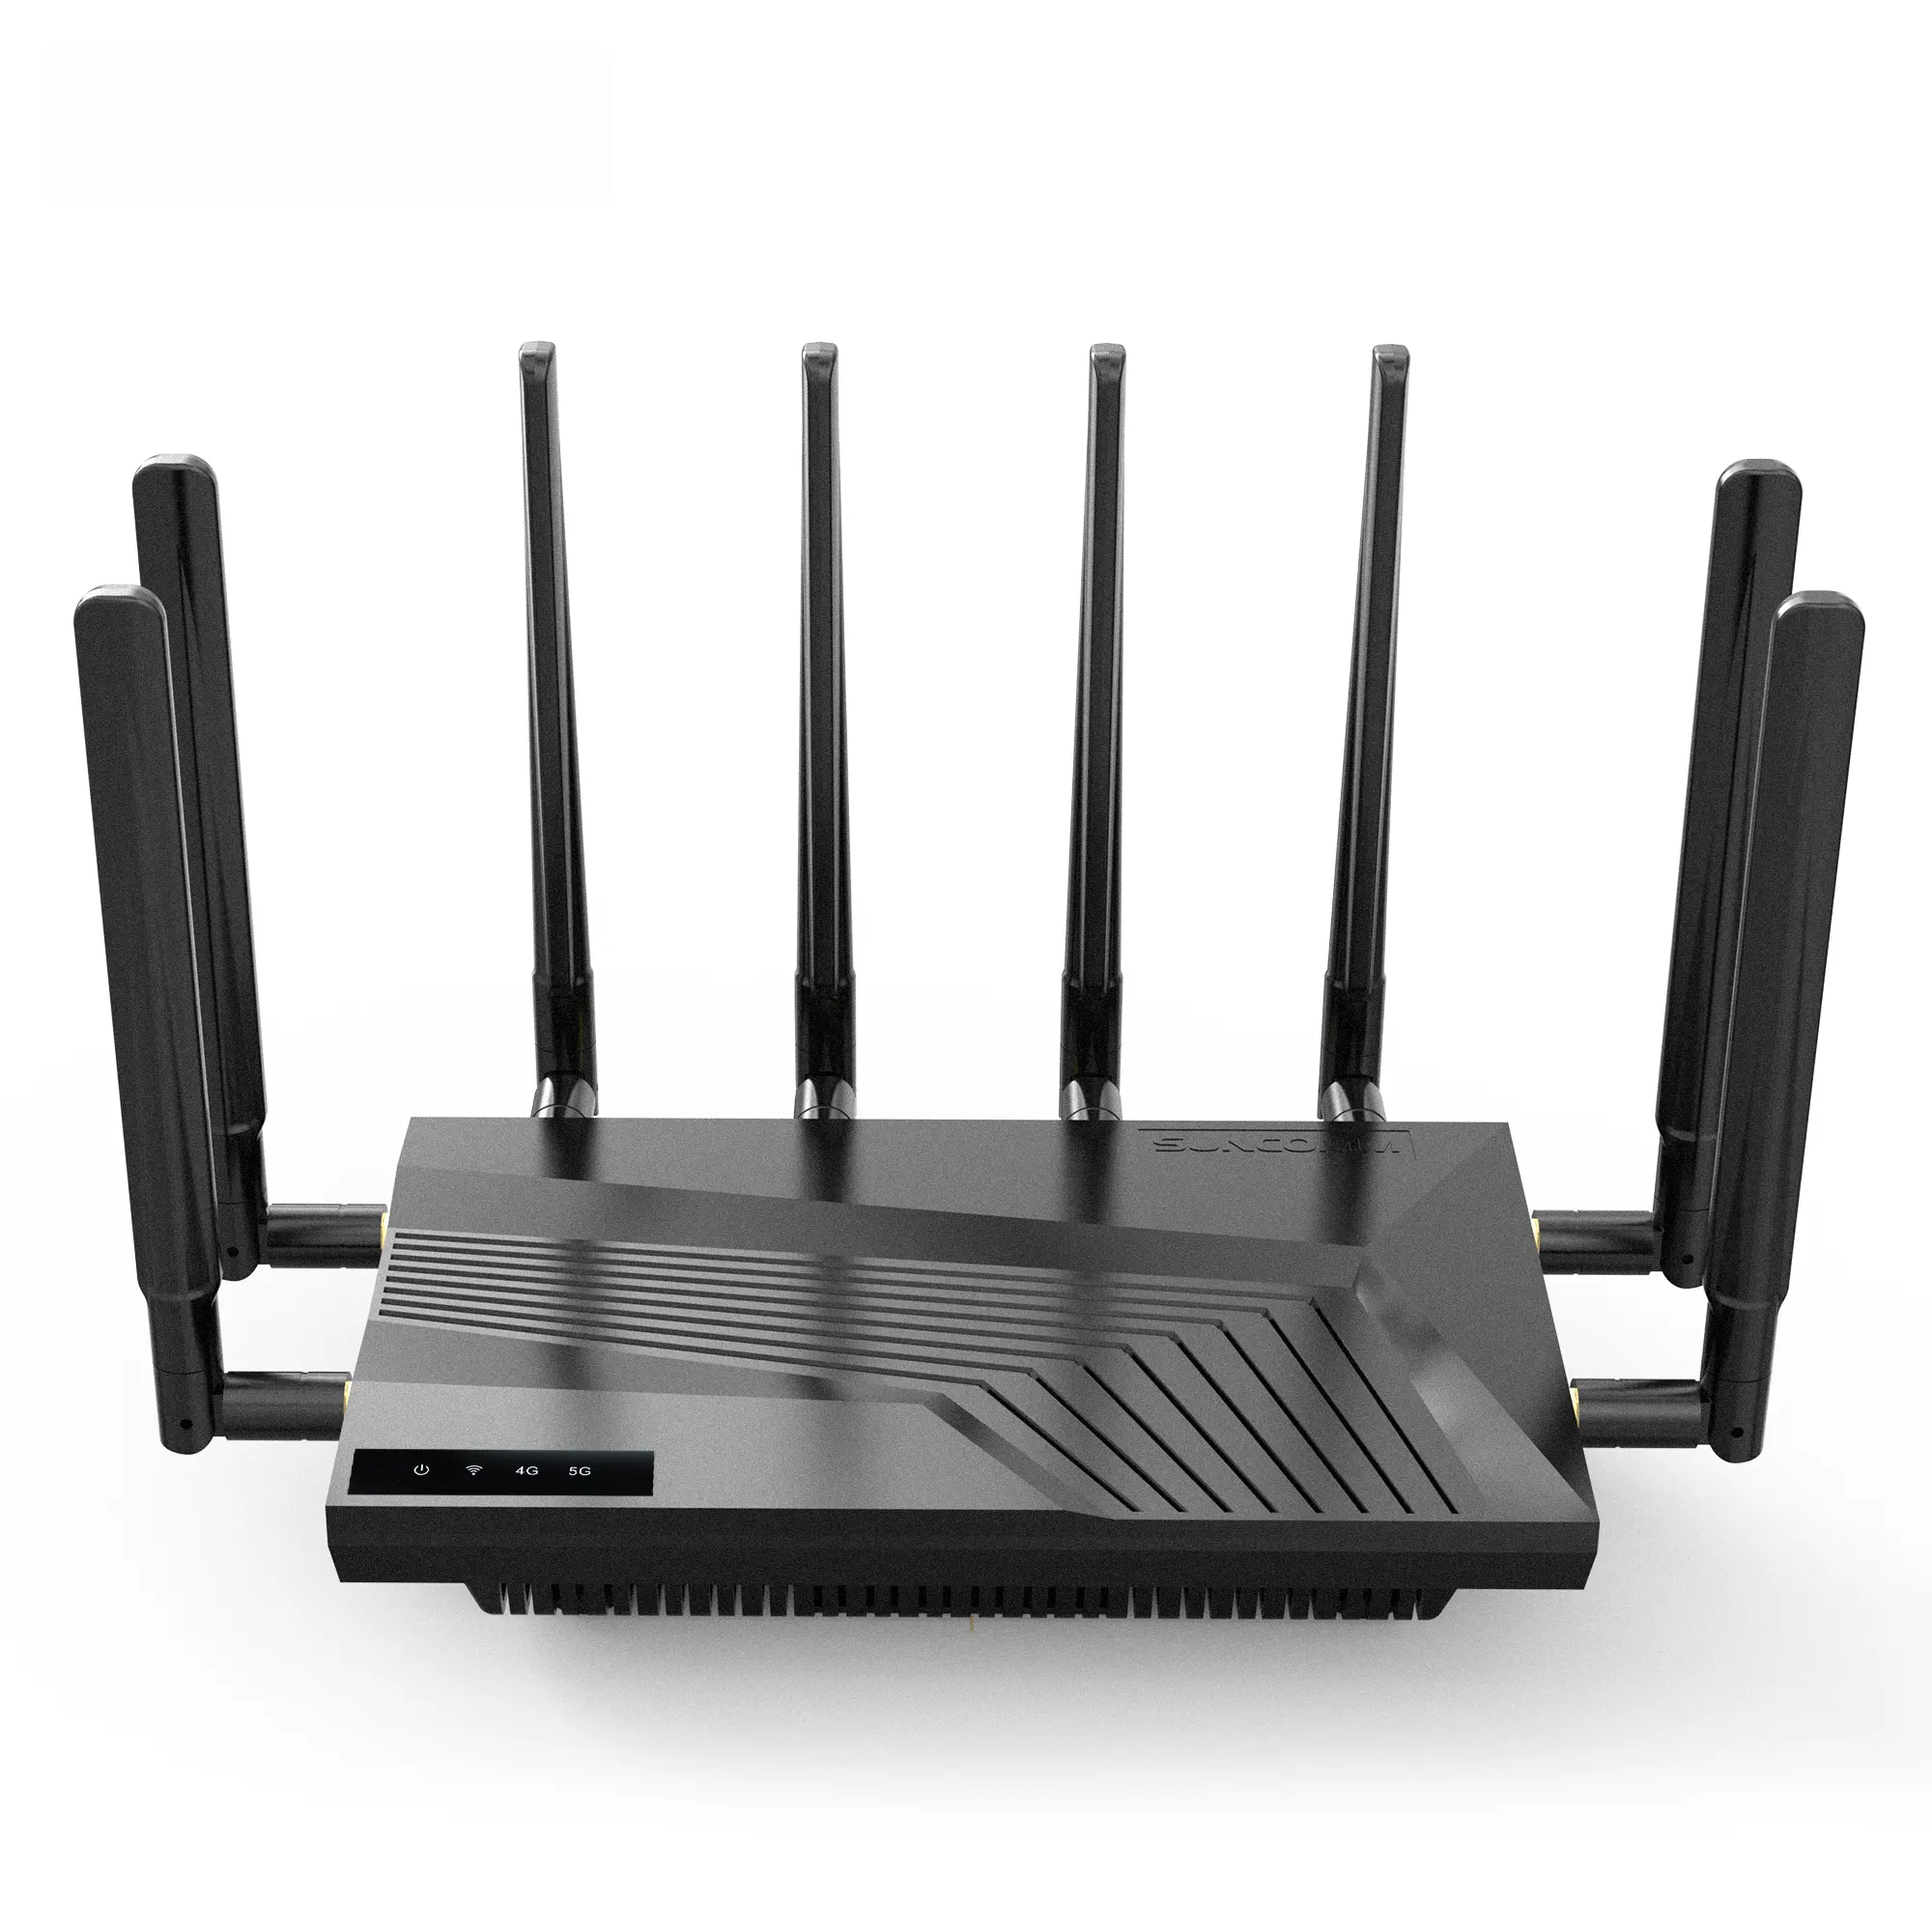 Nuovo router SUNCOMM SE06 Home 4G 5G WiFi 6 router Internet ad alta velocità RG520N-GL IPQ5018 5g con slot per sim card